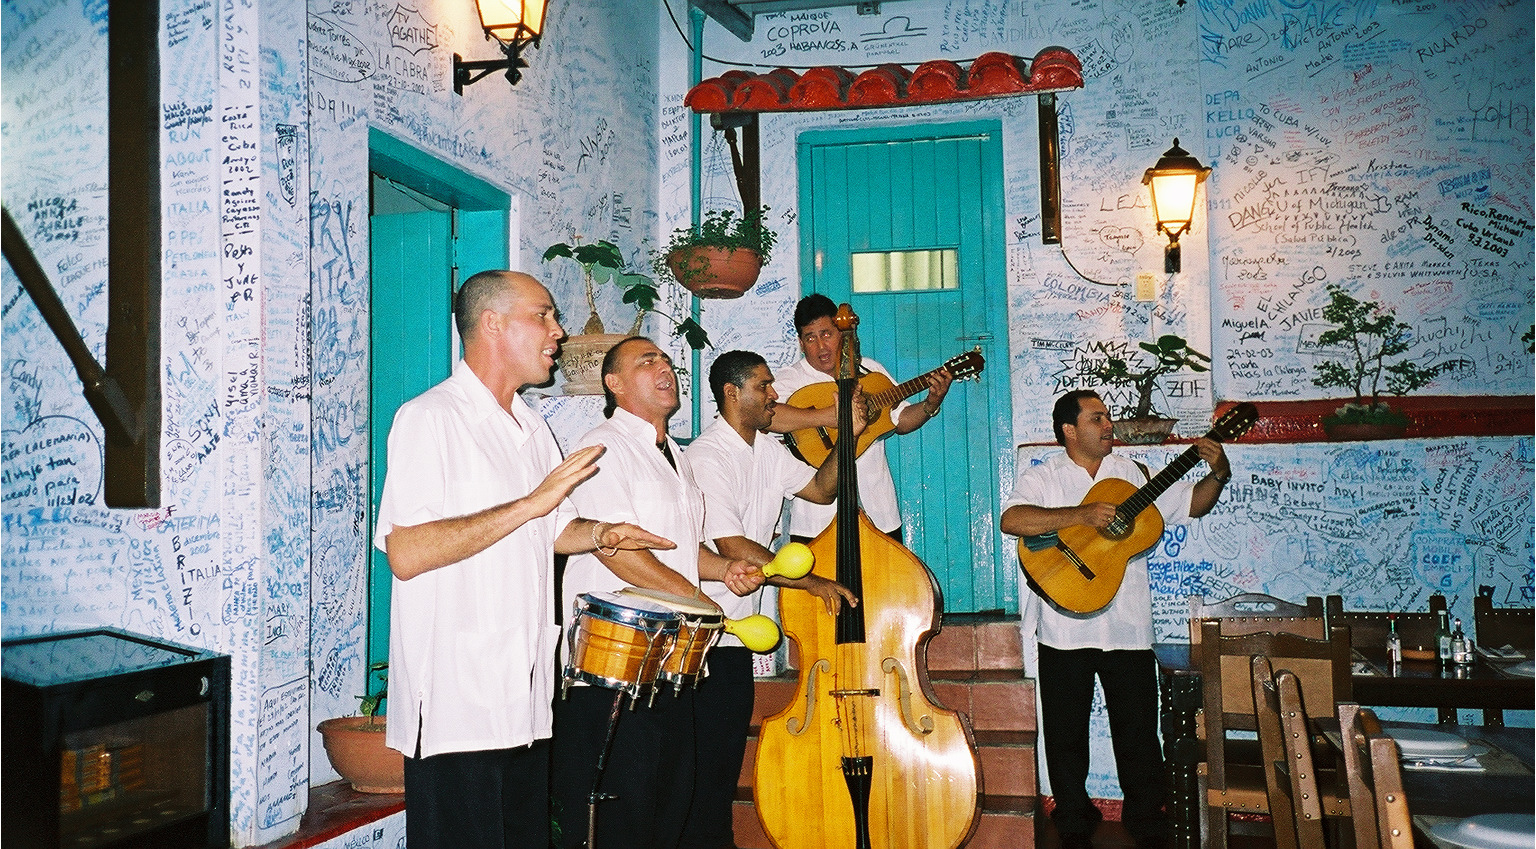 Musicians at La Bodeguita Del Medio, these guys were great.